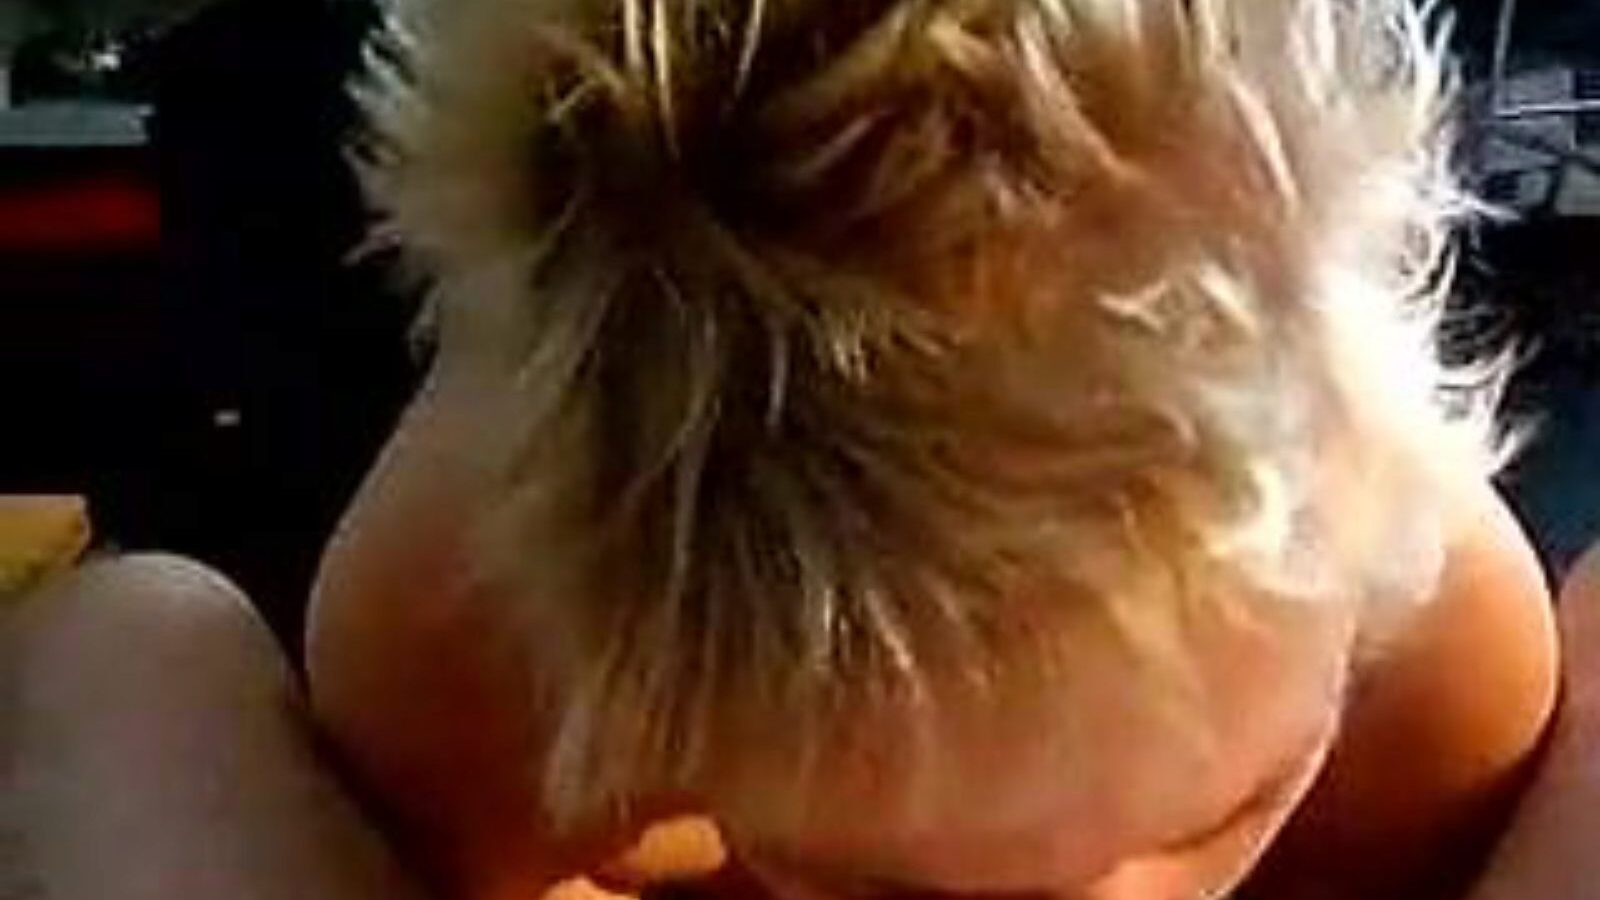 leuke dame: kotitekoinen ja vanha tyttö porno video a6 - xhamster katsella leuke dame putki fuckfest-elokuva ilmaiseksi xhamsterissa, kuumimpien hollantilaisten kotitekoisten, vanhojen tyttöjen ja imevien pornografisten videoiden keikoilla